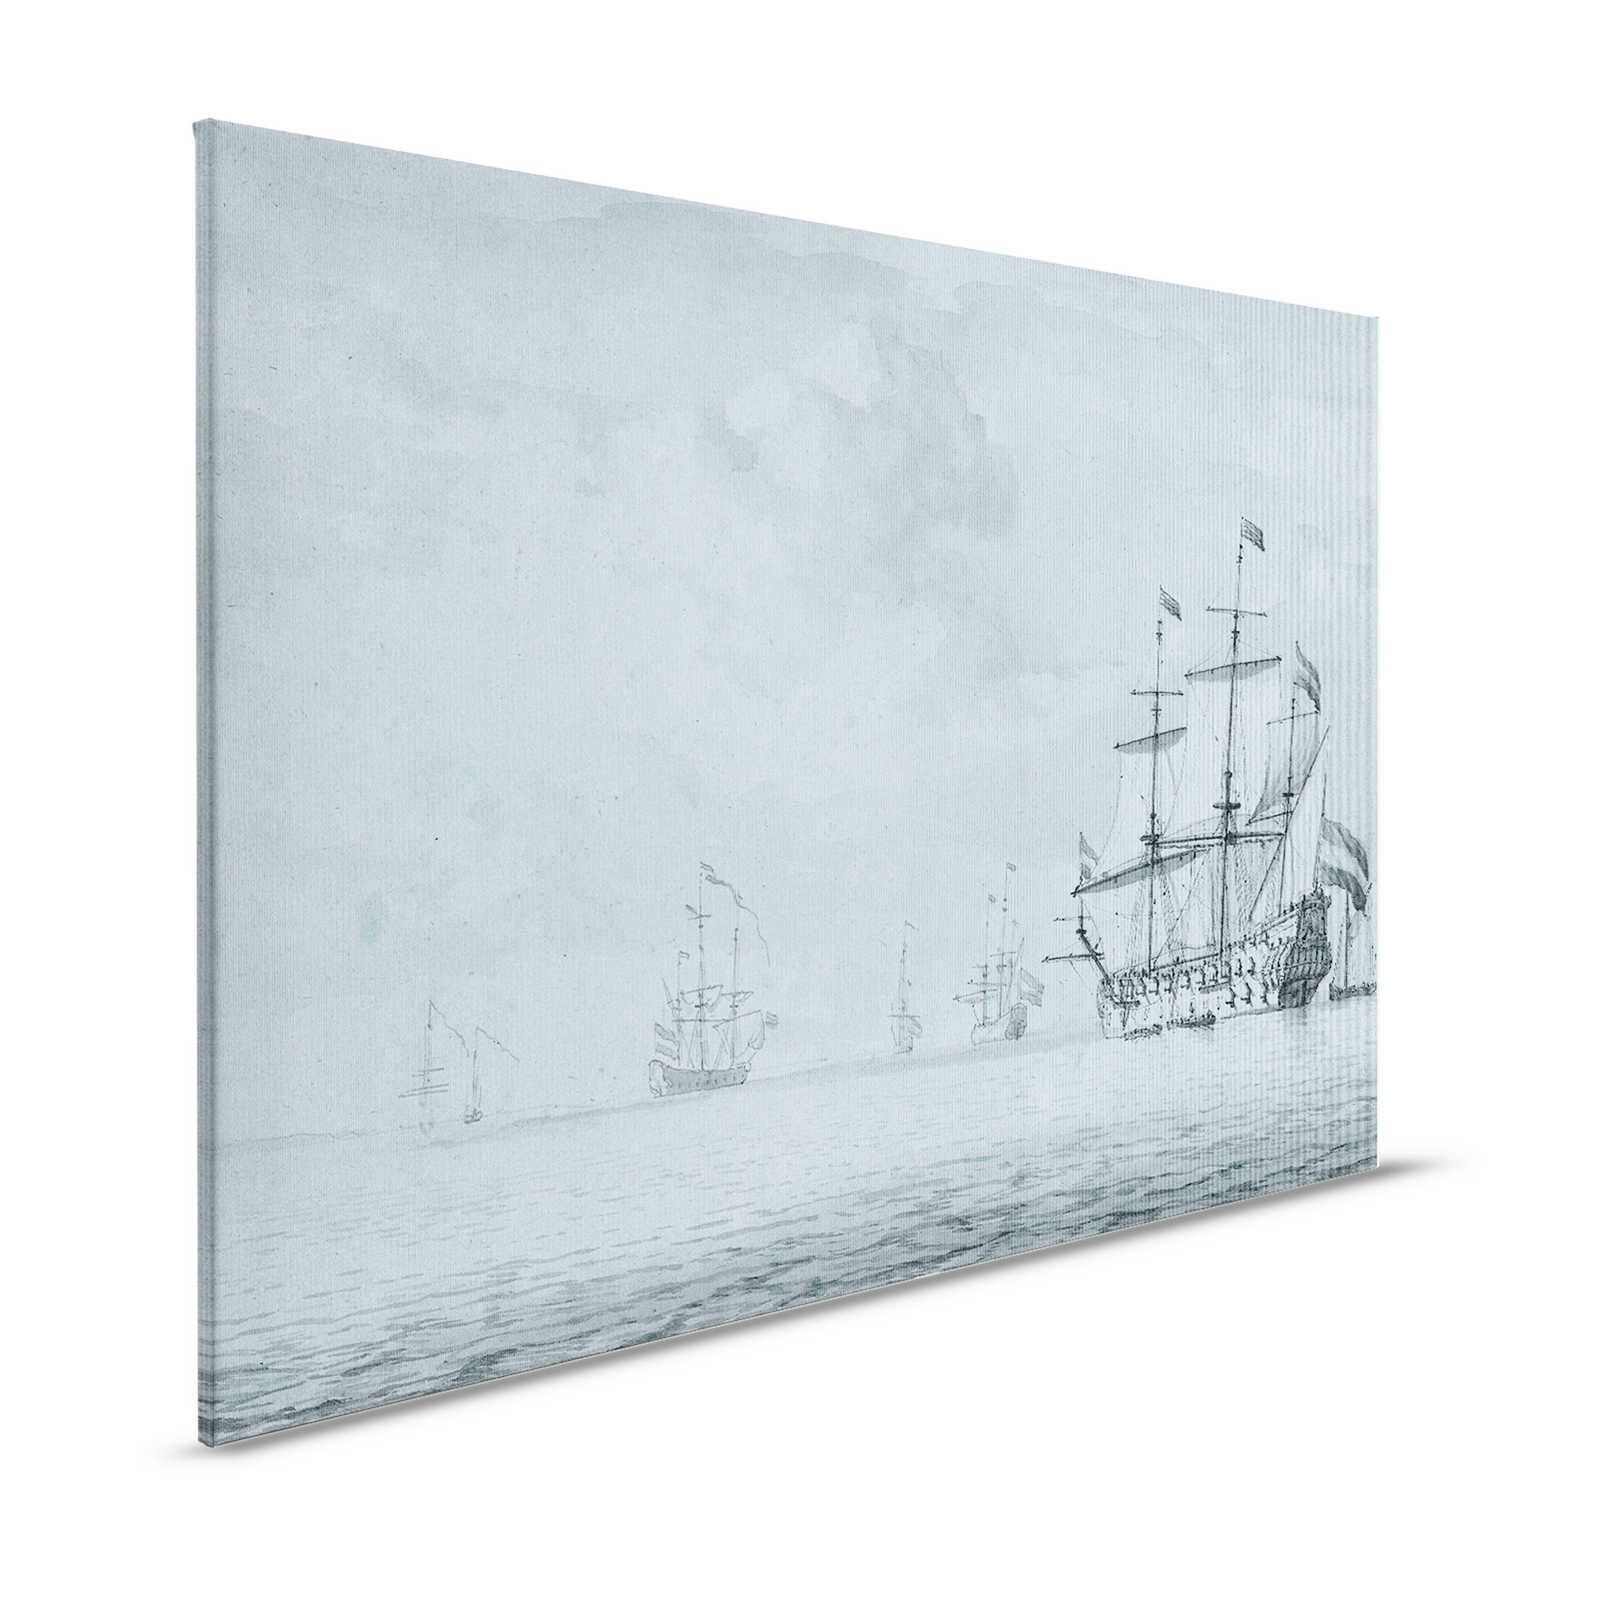 On the Sea 1 - Graublaues Leinwandbild Schiffe Vintage Gemälde Stil – 1,20 m x 0,80 m
